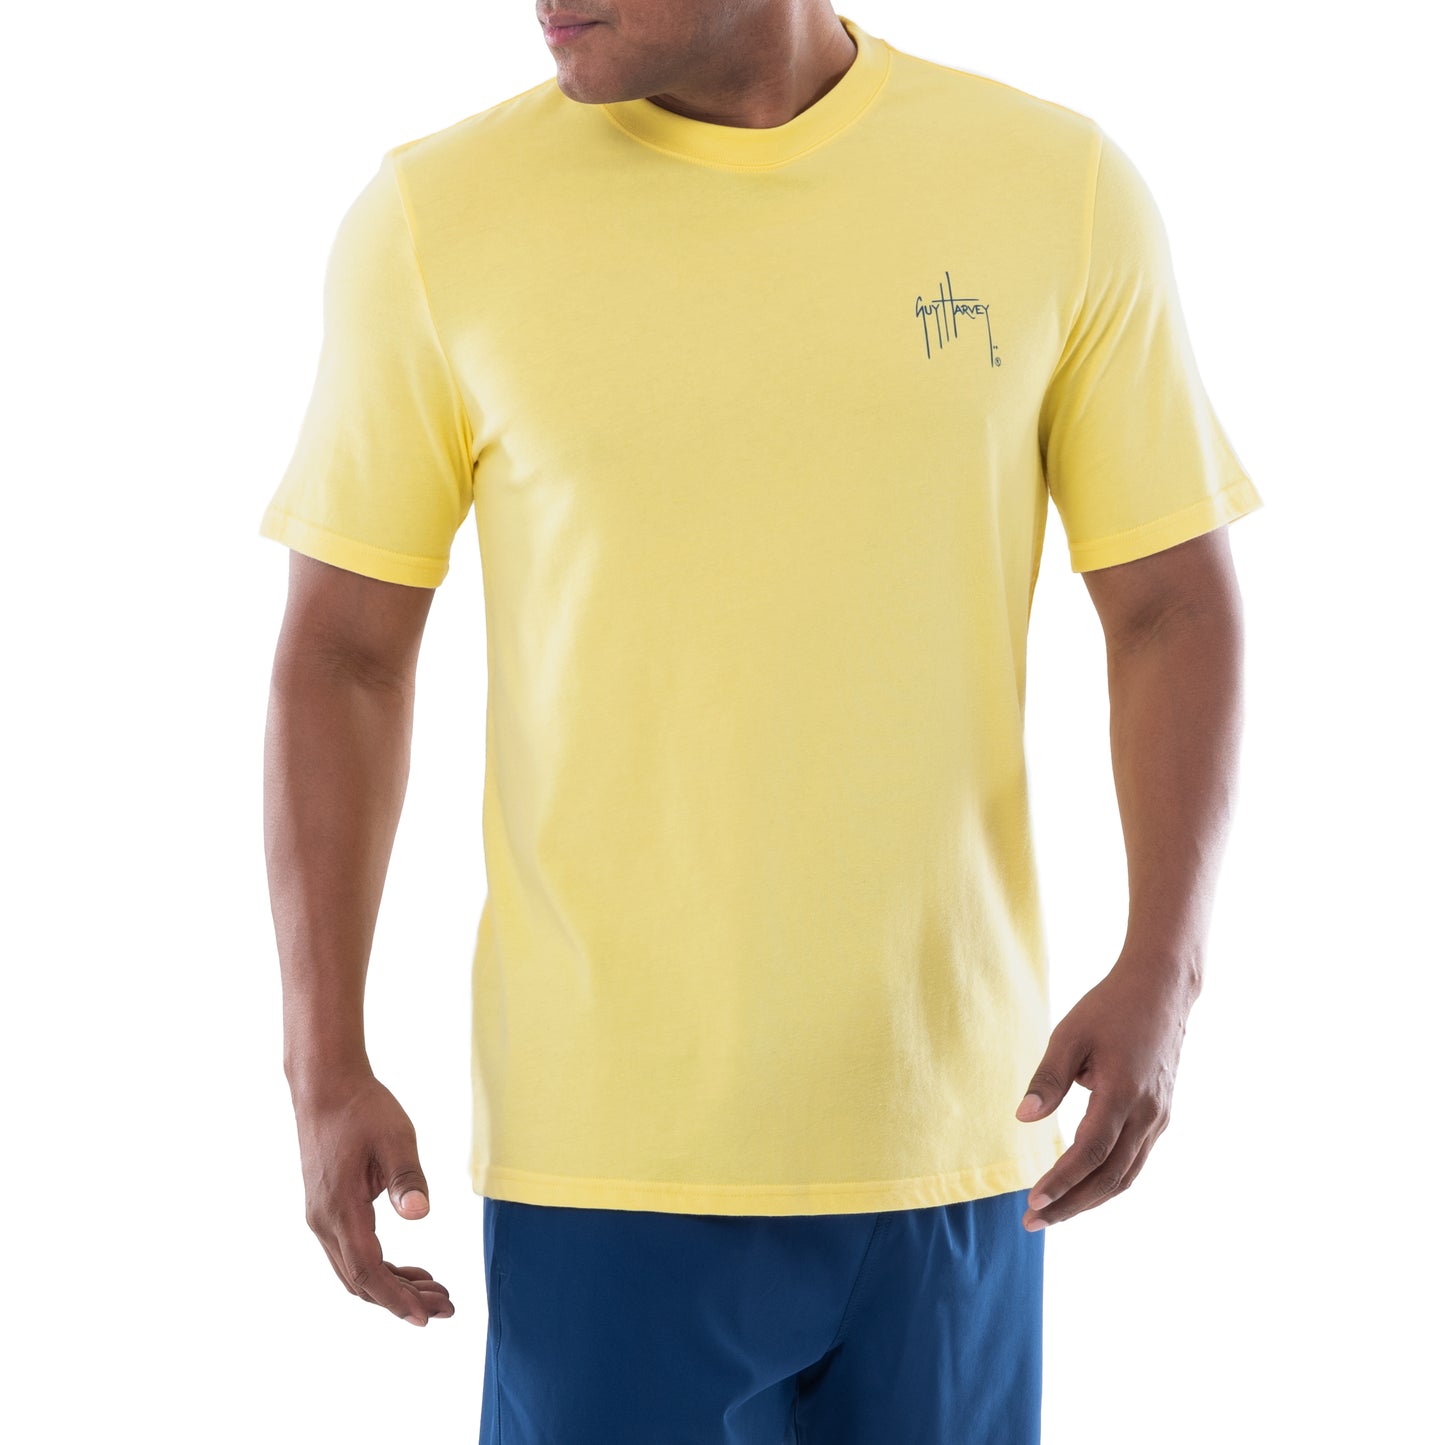 Men's Deep Blue Short Sleeve T-Shirt